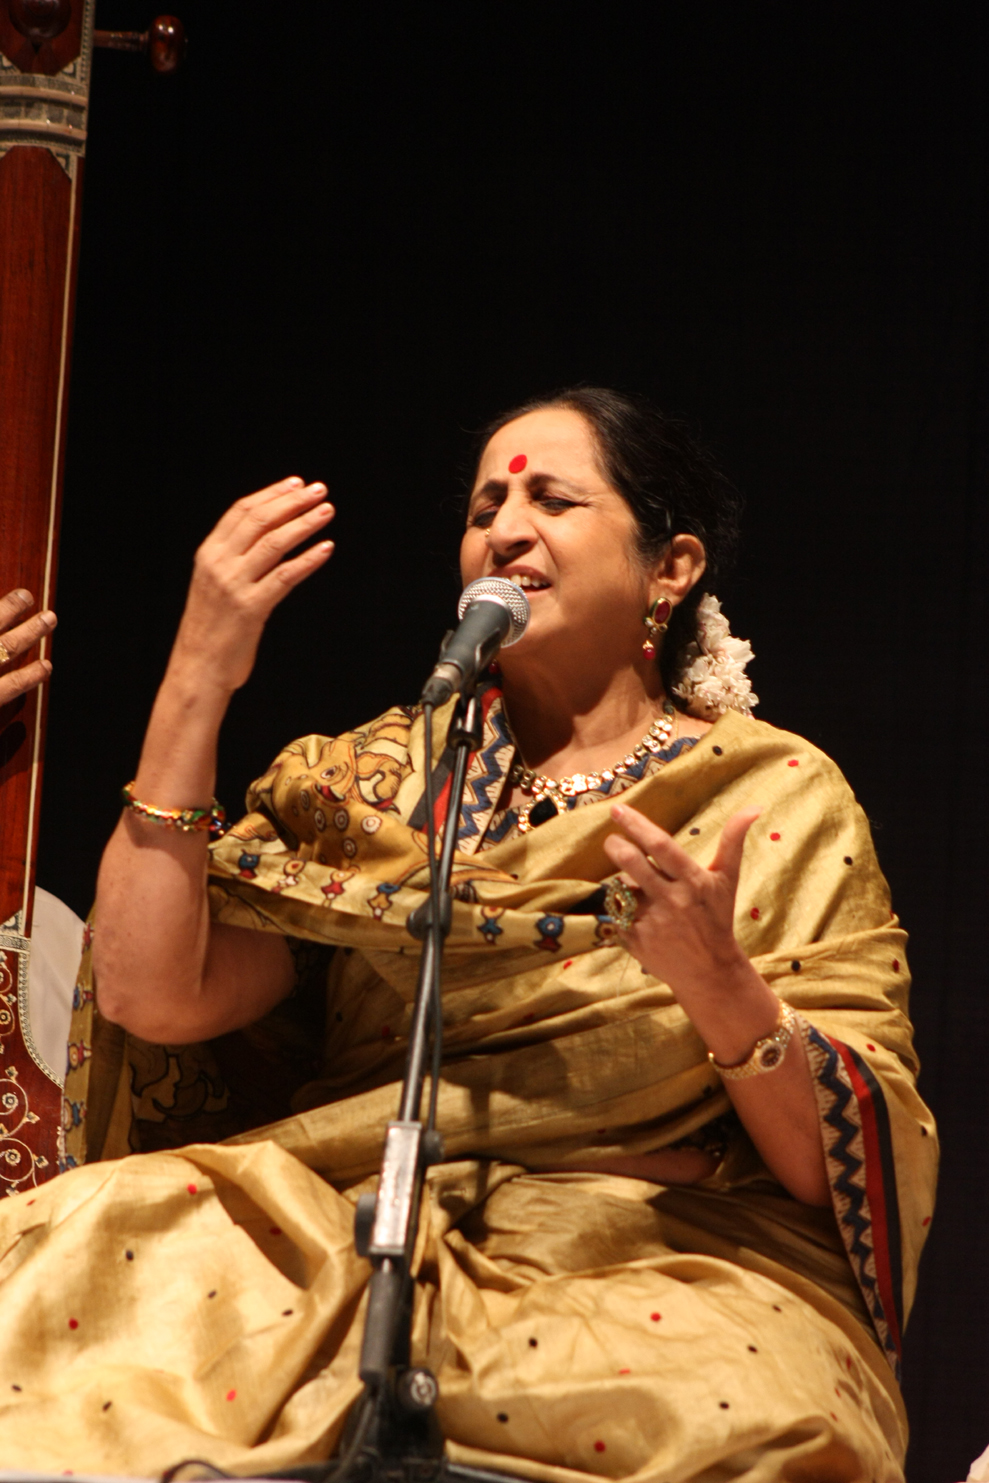 Concert of Aruna Sairam - Rang Abhang